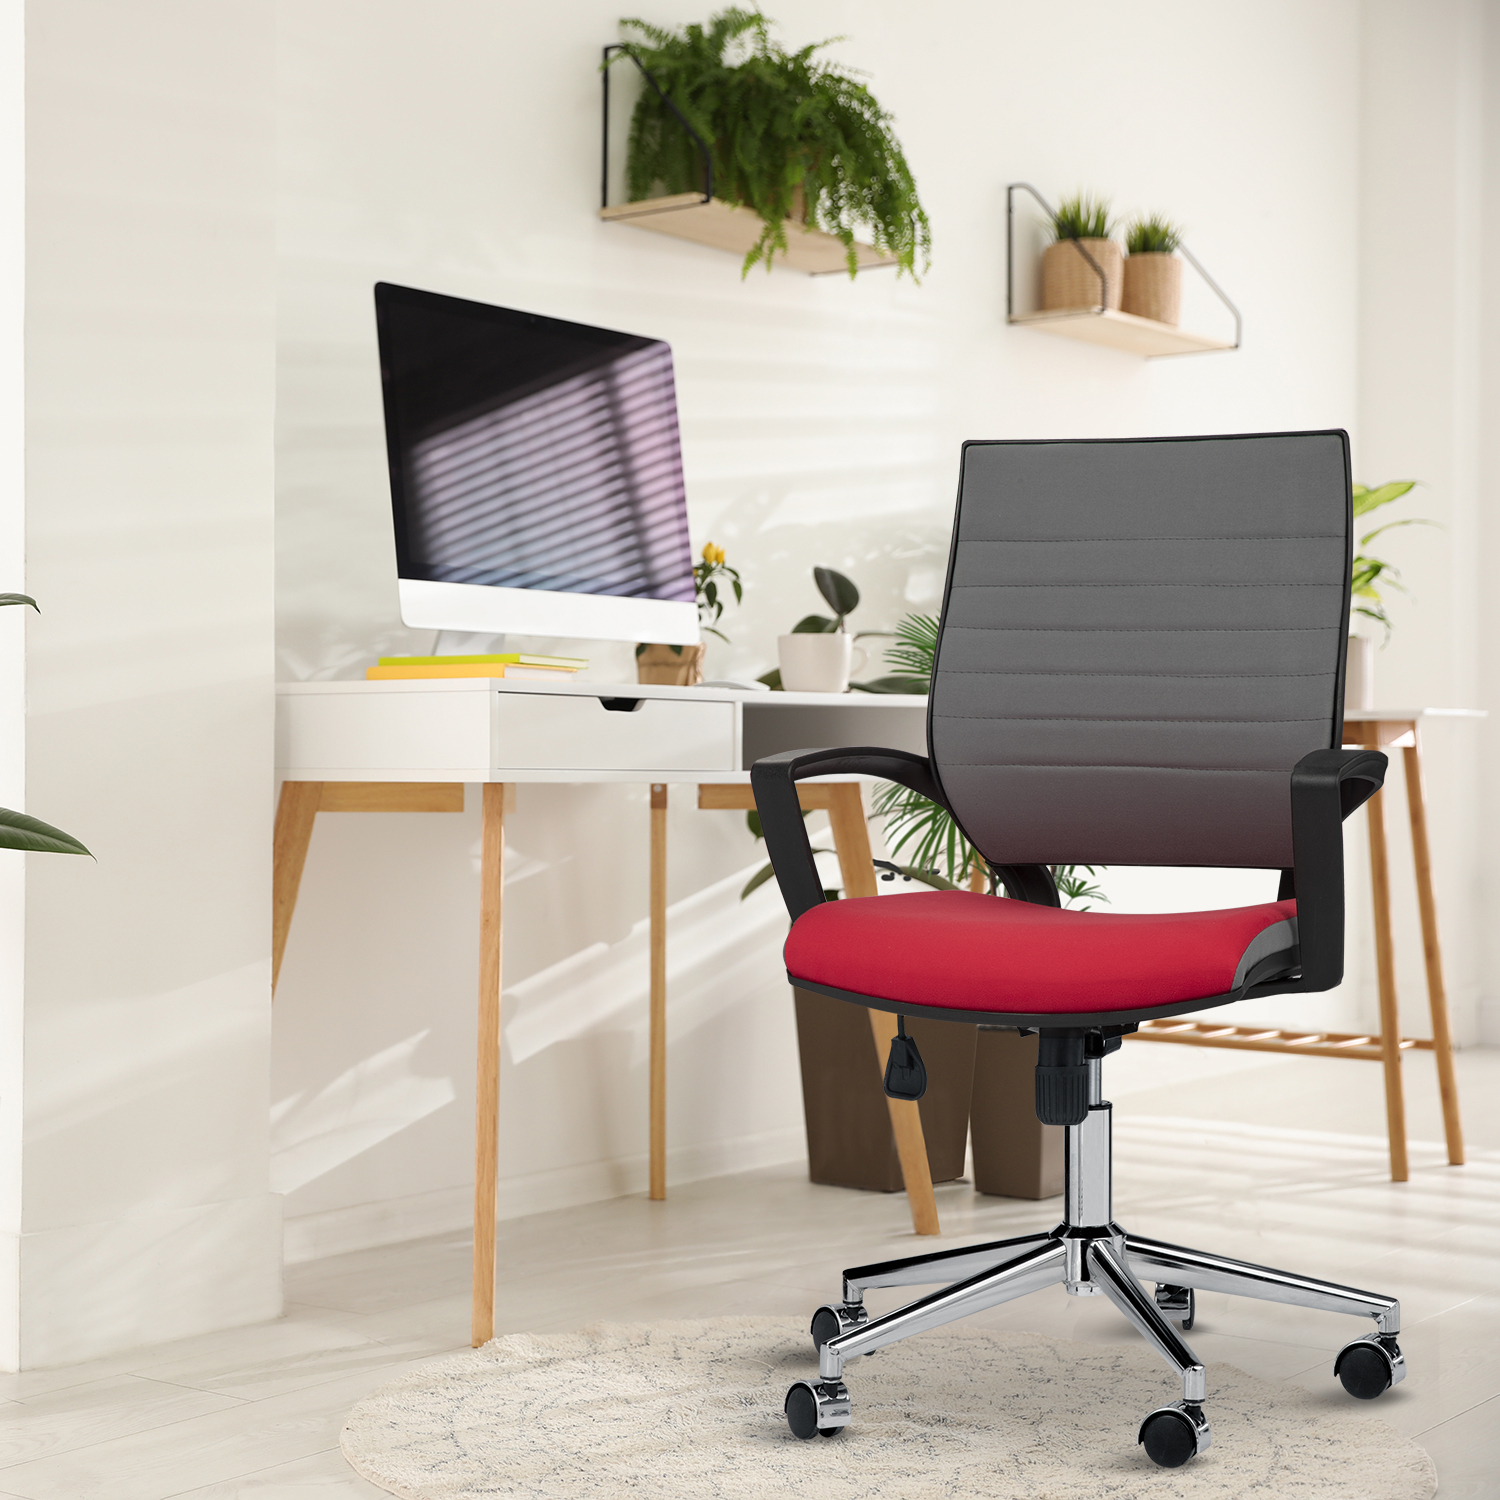 Asbir Mobilya Rigel 55100 Metal Ayaklı Çalışma Koltuğu Ofis Sandalyesi